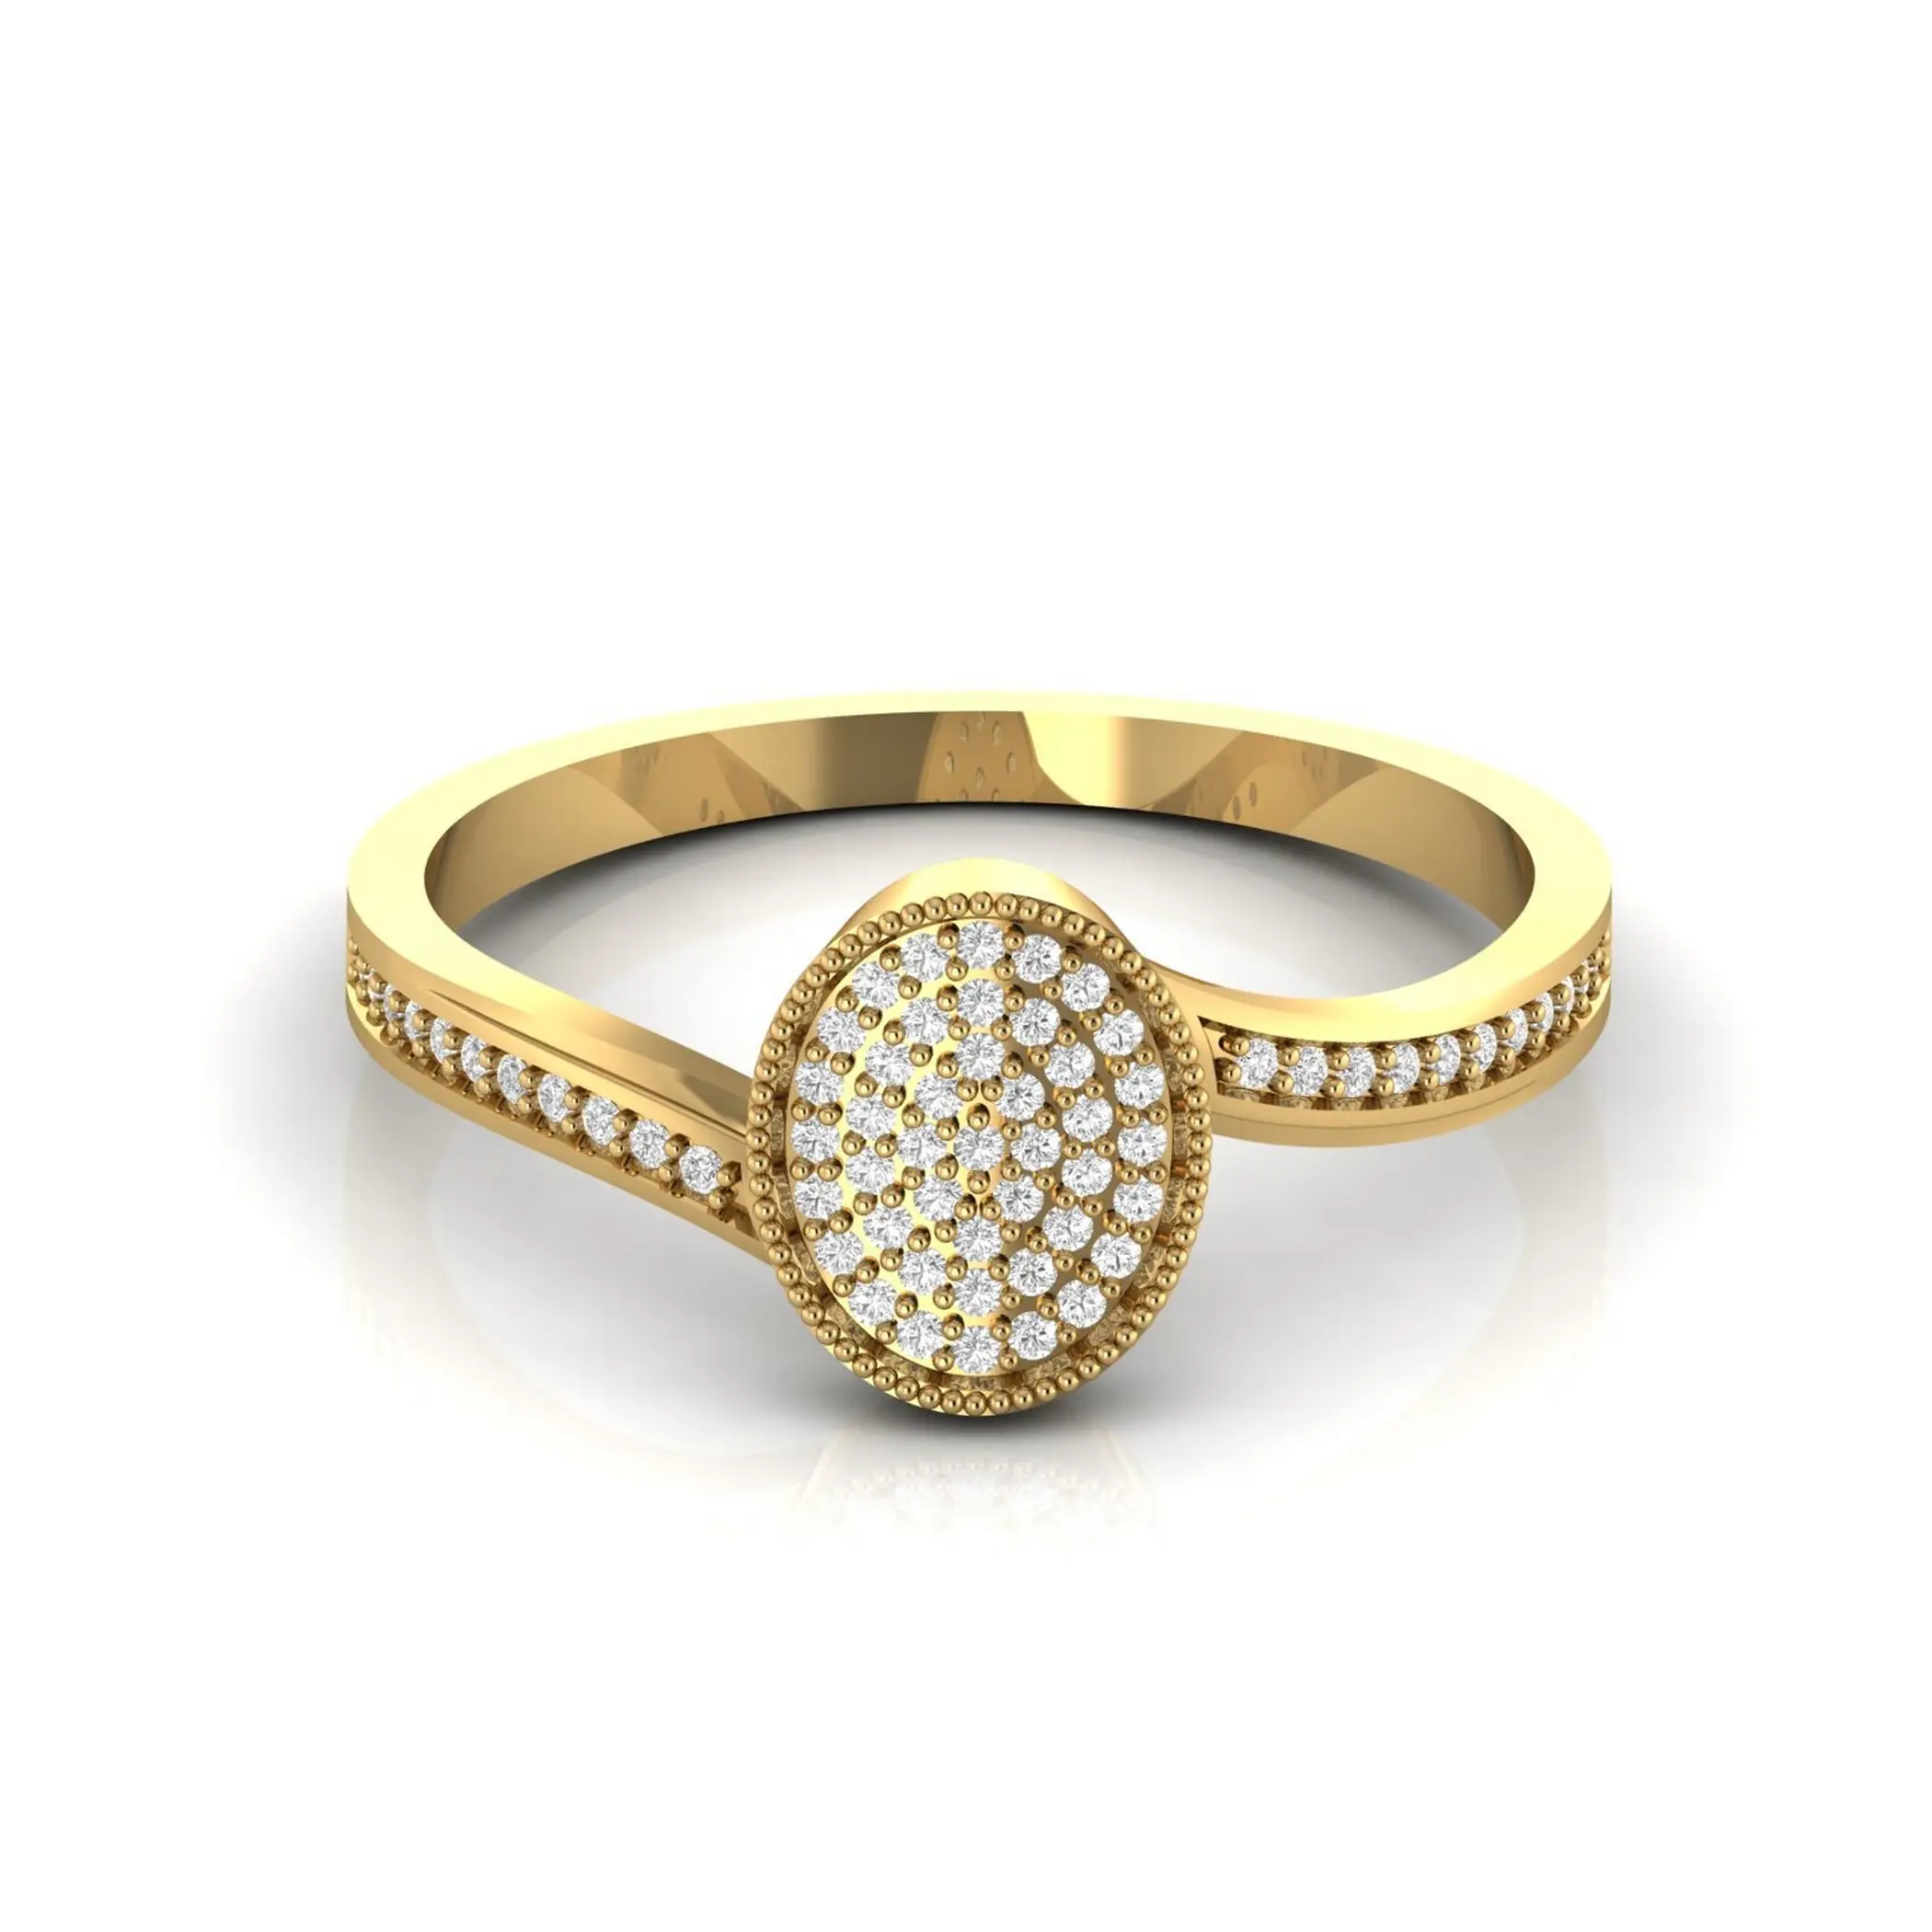 Köpüklü Oval şekil tasarım küme elmas nişan yüzüğü 14kt sarı beyaz gül altın 2.27 gram güzel takı doğum günü hediyesi